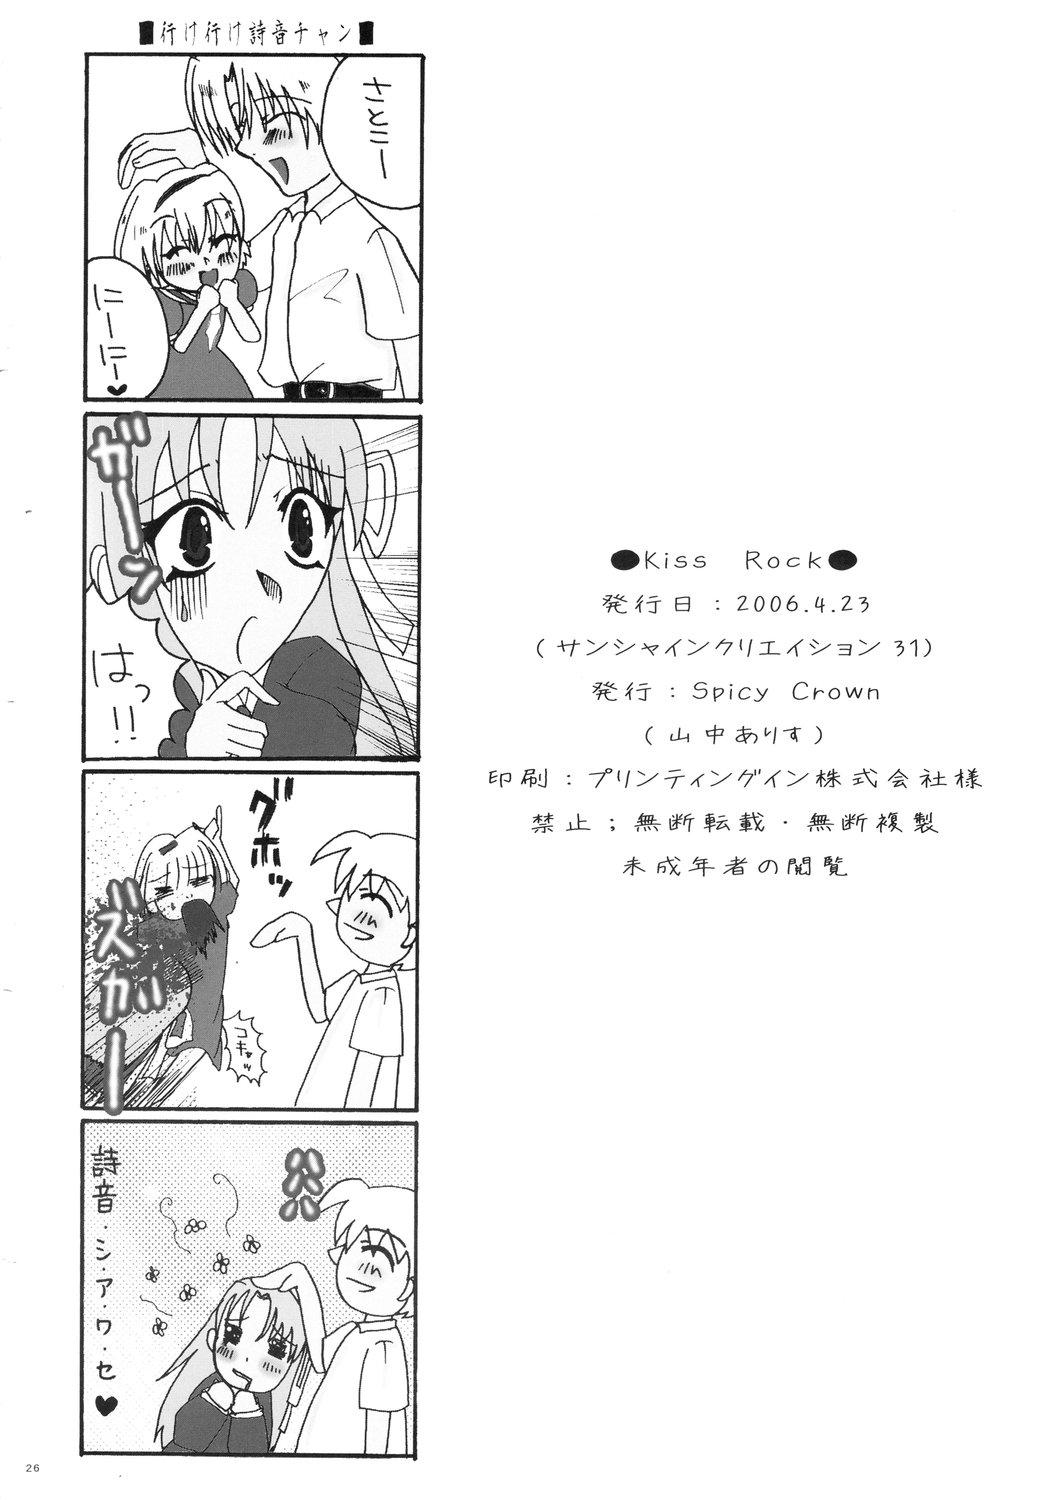 Milfporn Kiss Rock - Higurashi no naku koro ni Novinhas - Page 26